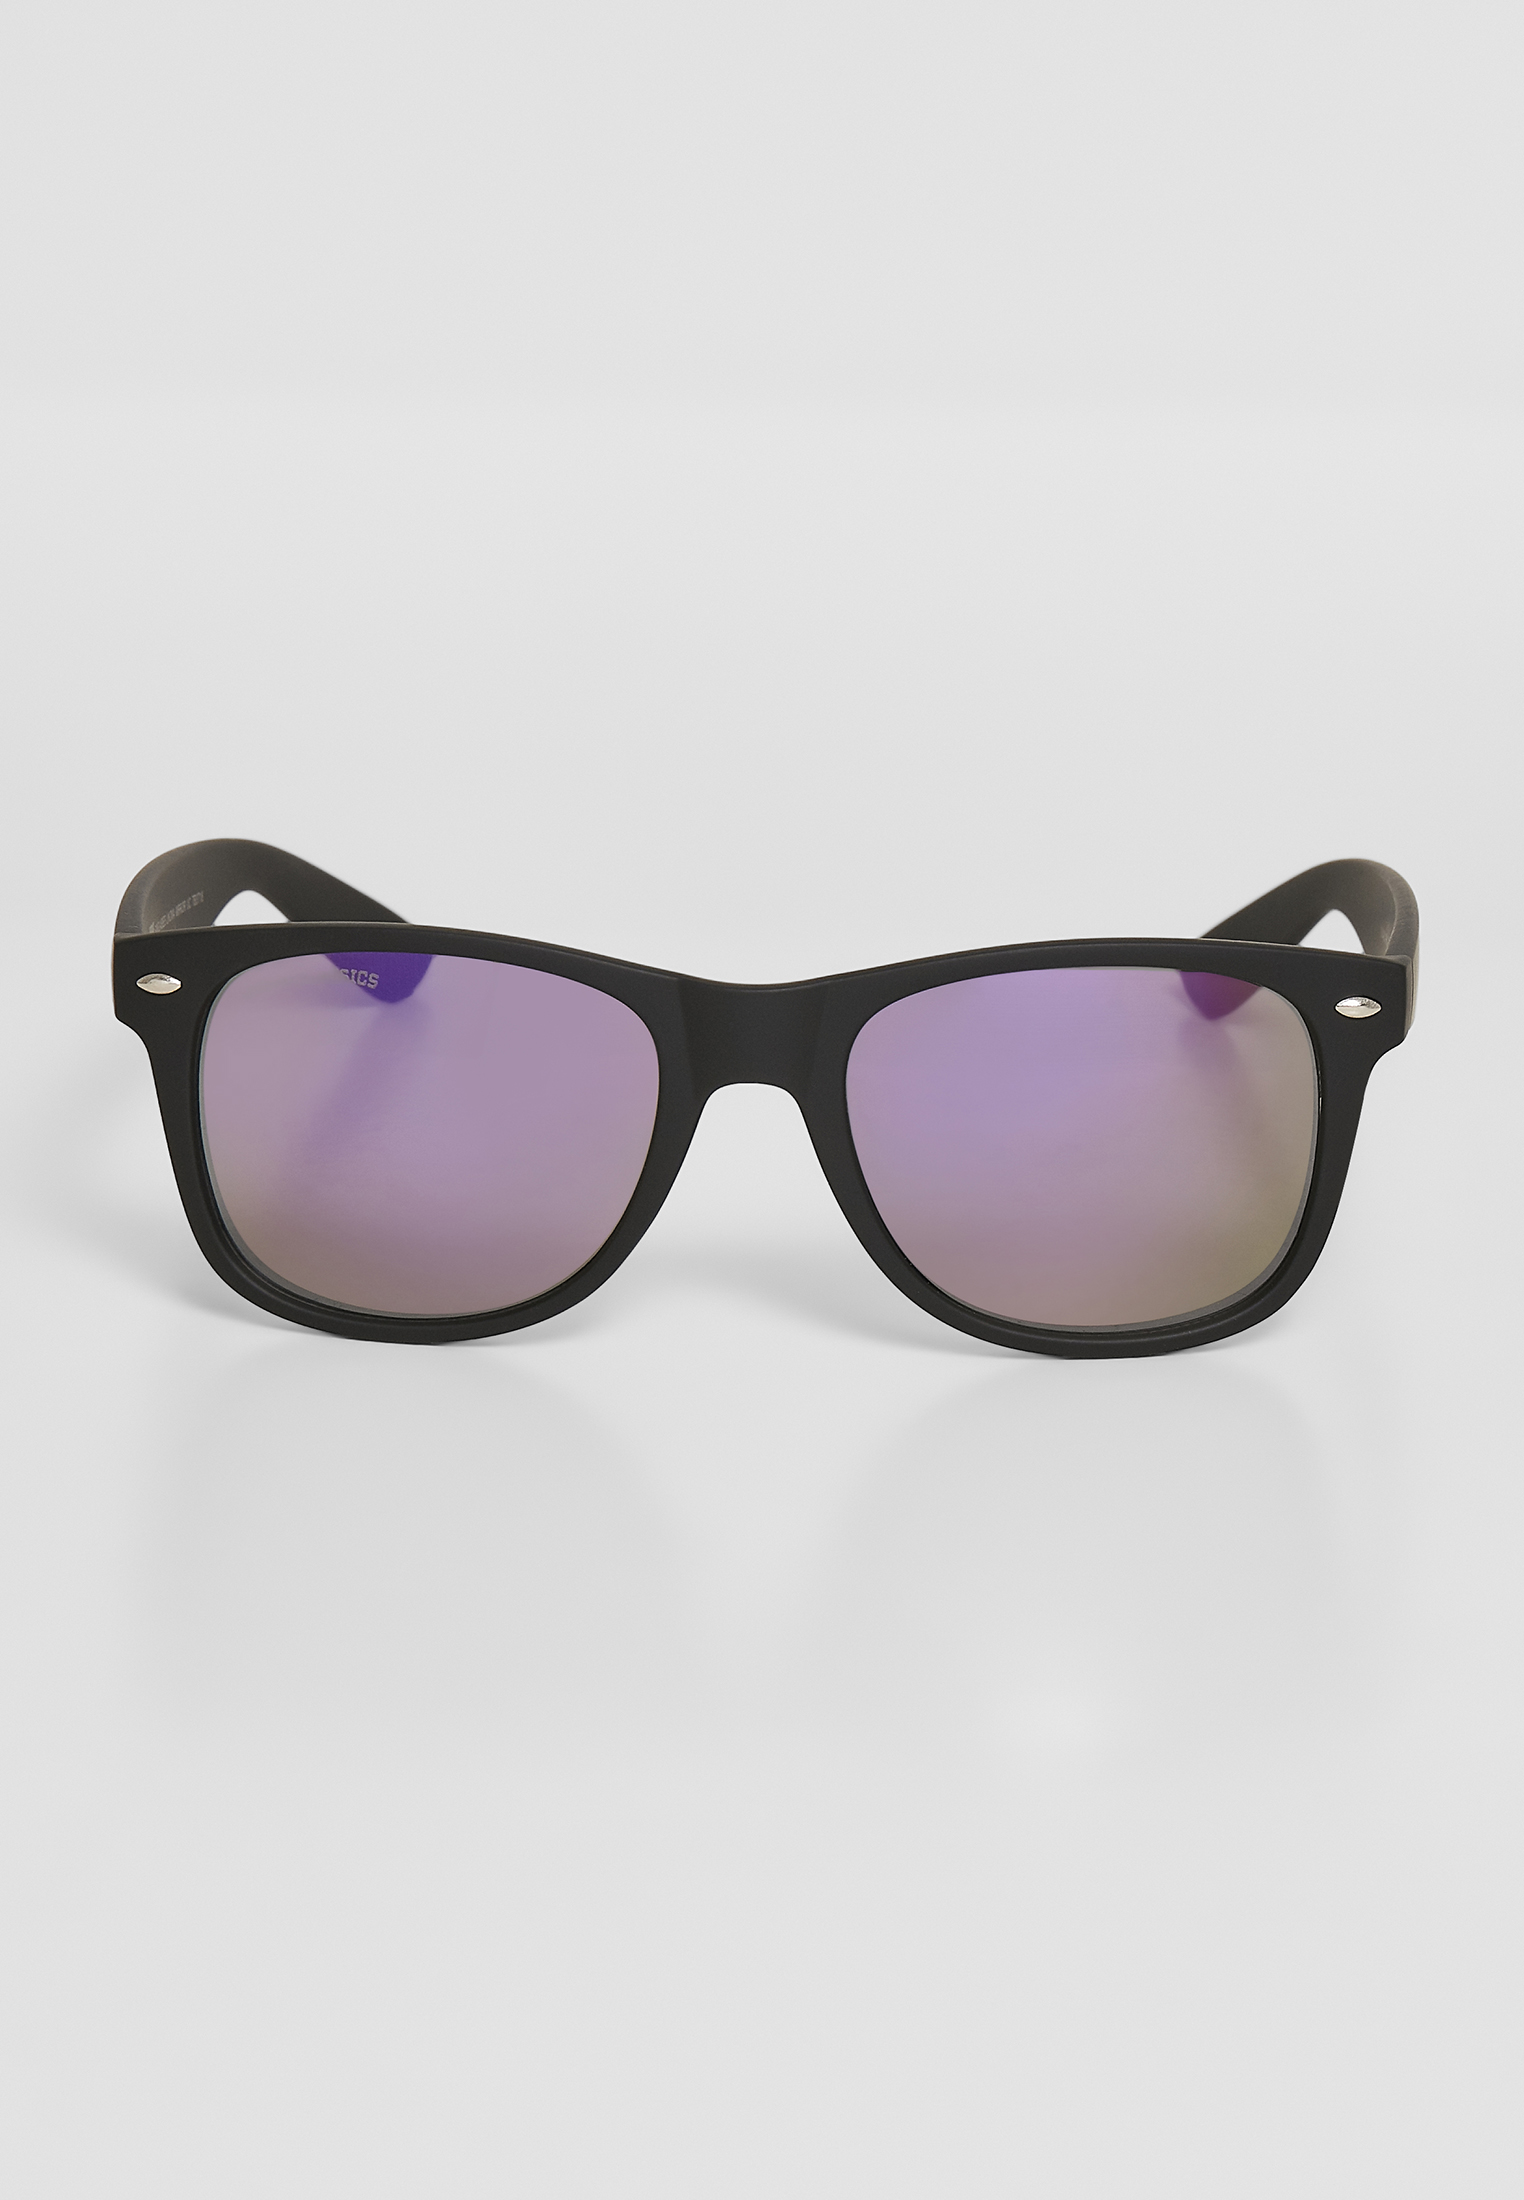 Sonnenbrillen Sunglasses Likoma Mirror UC in Farbe blk/pur